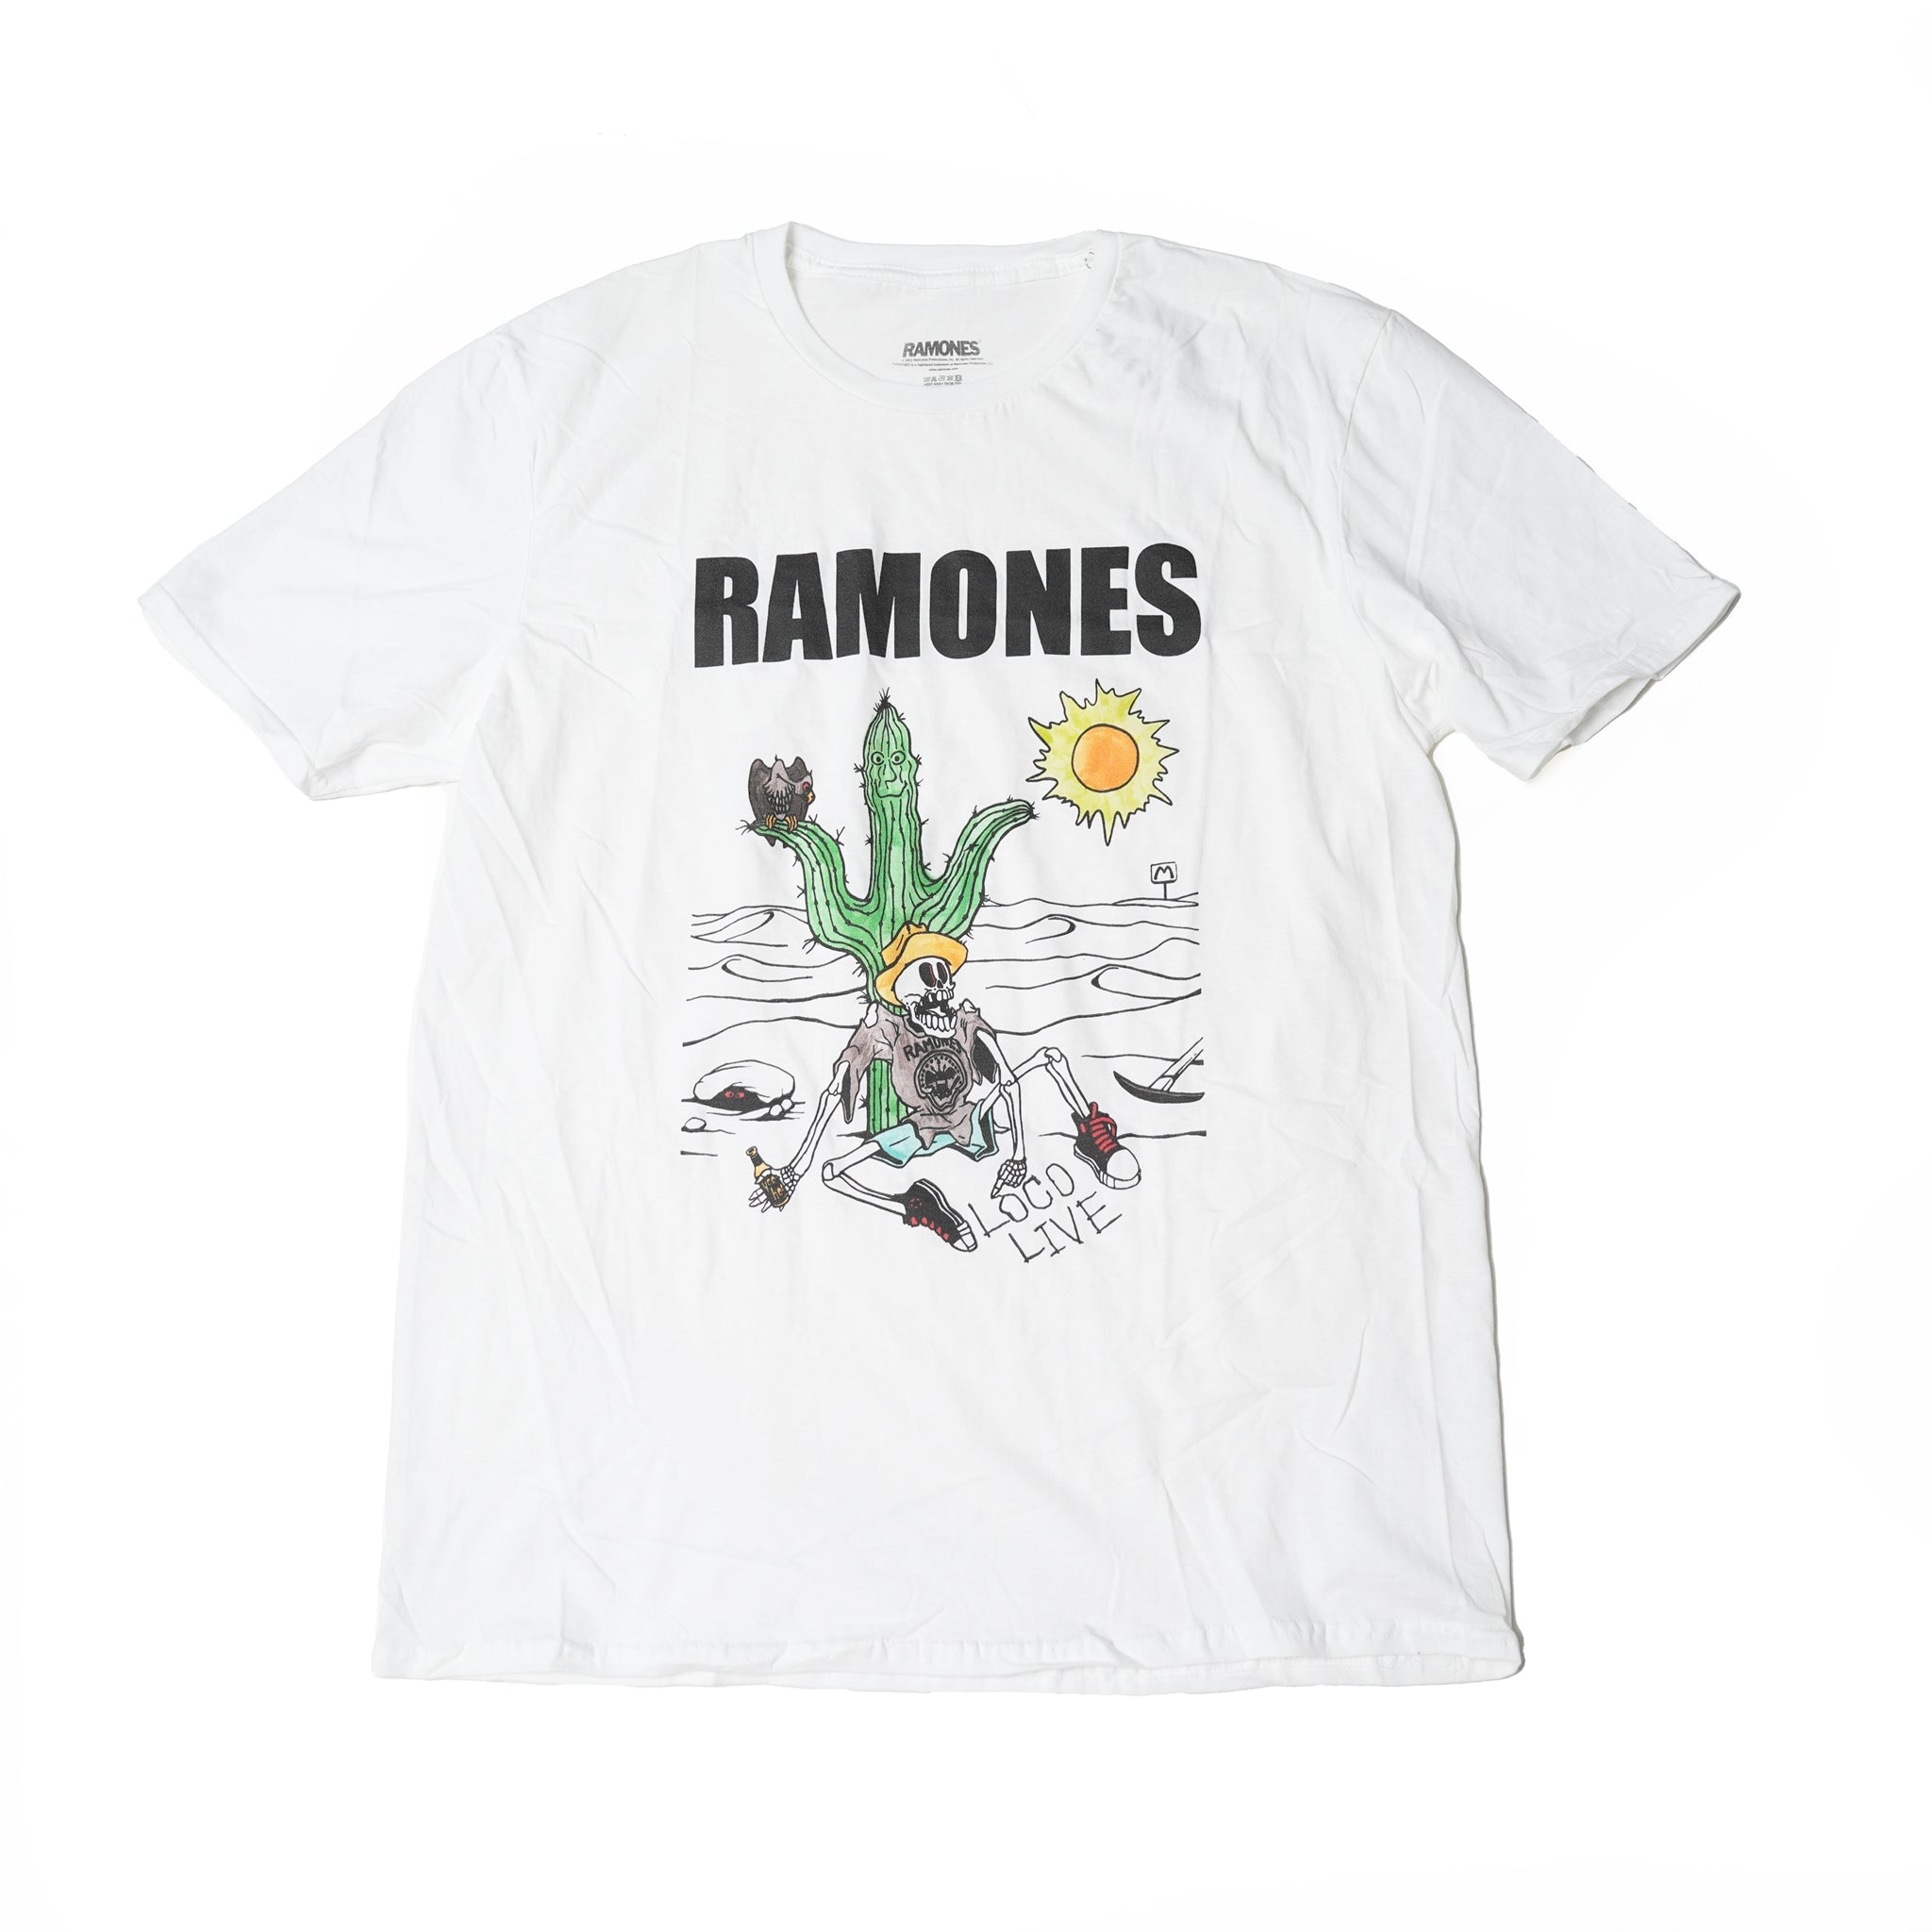 Name:Ramones_Loco Live_Uni_WHT【ROCK OFF】【ネコポス選択可能】